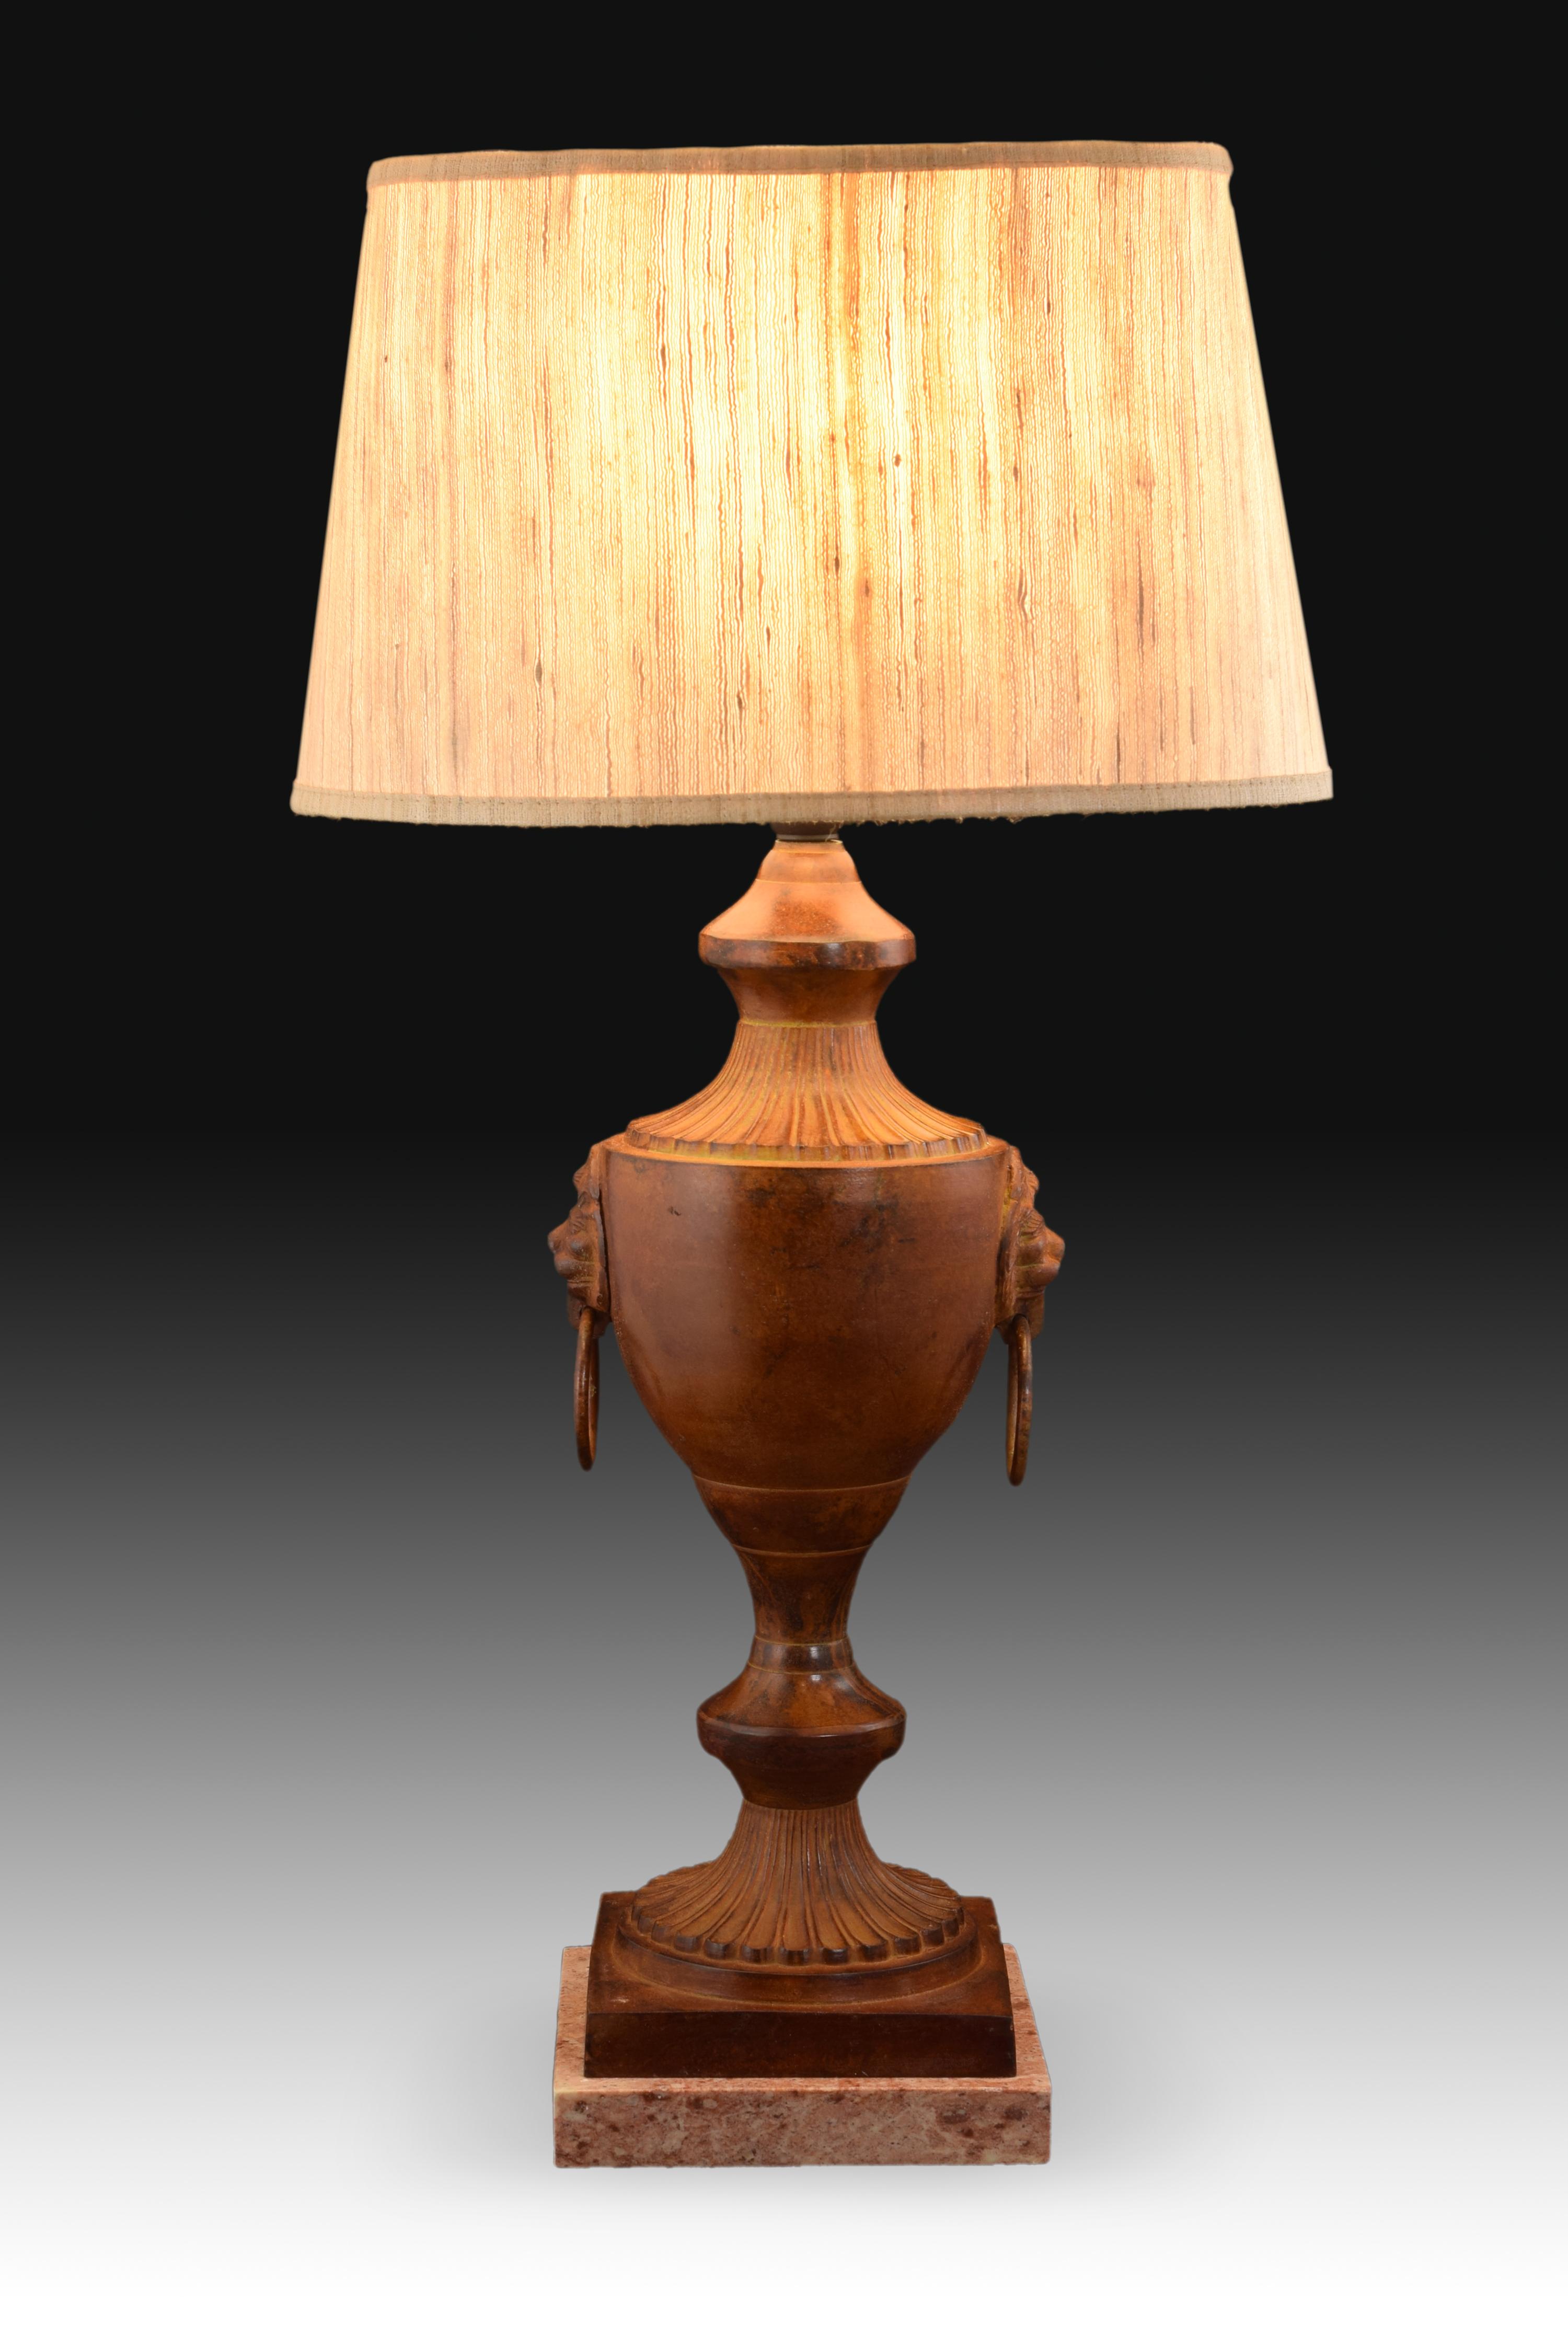 table lamp base no shade